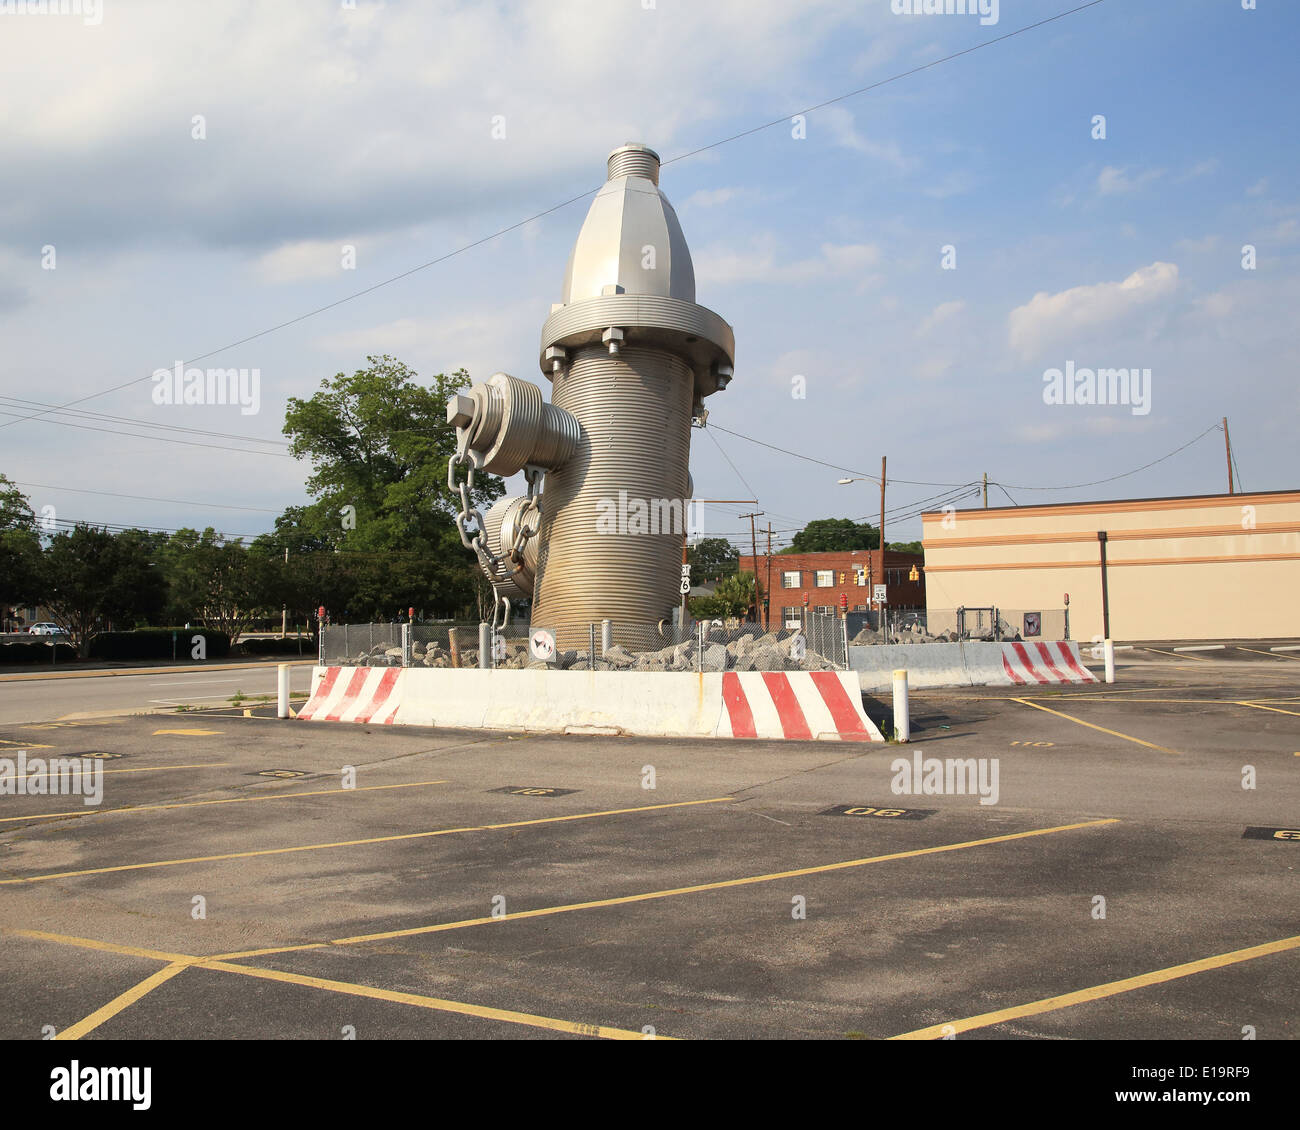 Die weltweit größte Hydranten, wurde offiziell in die Innenstadt von Columbia, South Carolina am 18. Februar 2001. Der Hydrant ist 39 Meter hoch mit fast fünf Tonnen schweren Skulptur in einem Betonsockel gesetzt. Fotos von Catherine Braun Stockfoto